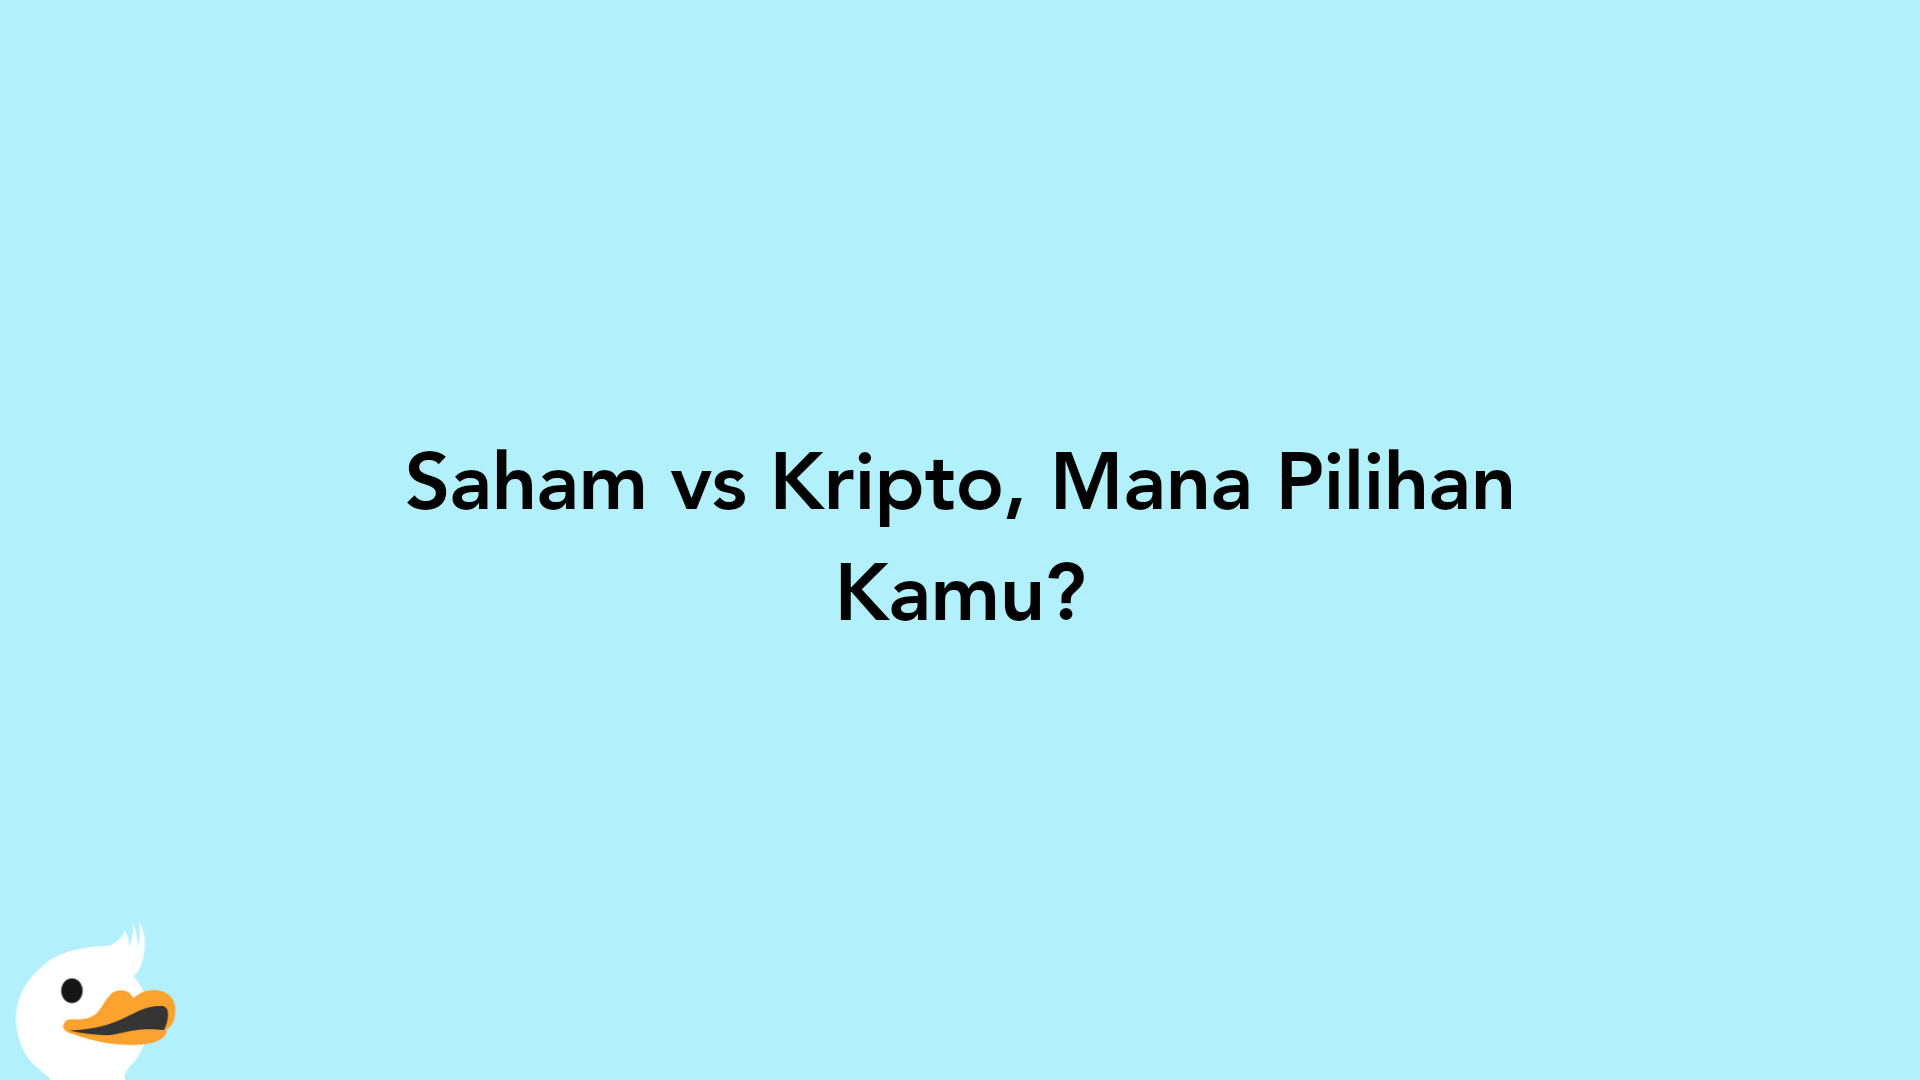 Saham vs Kripto, Mana Pilihan Kamu?